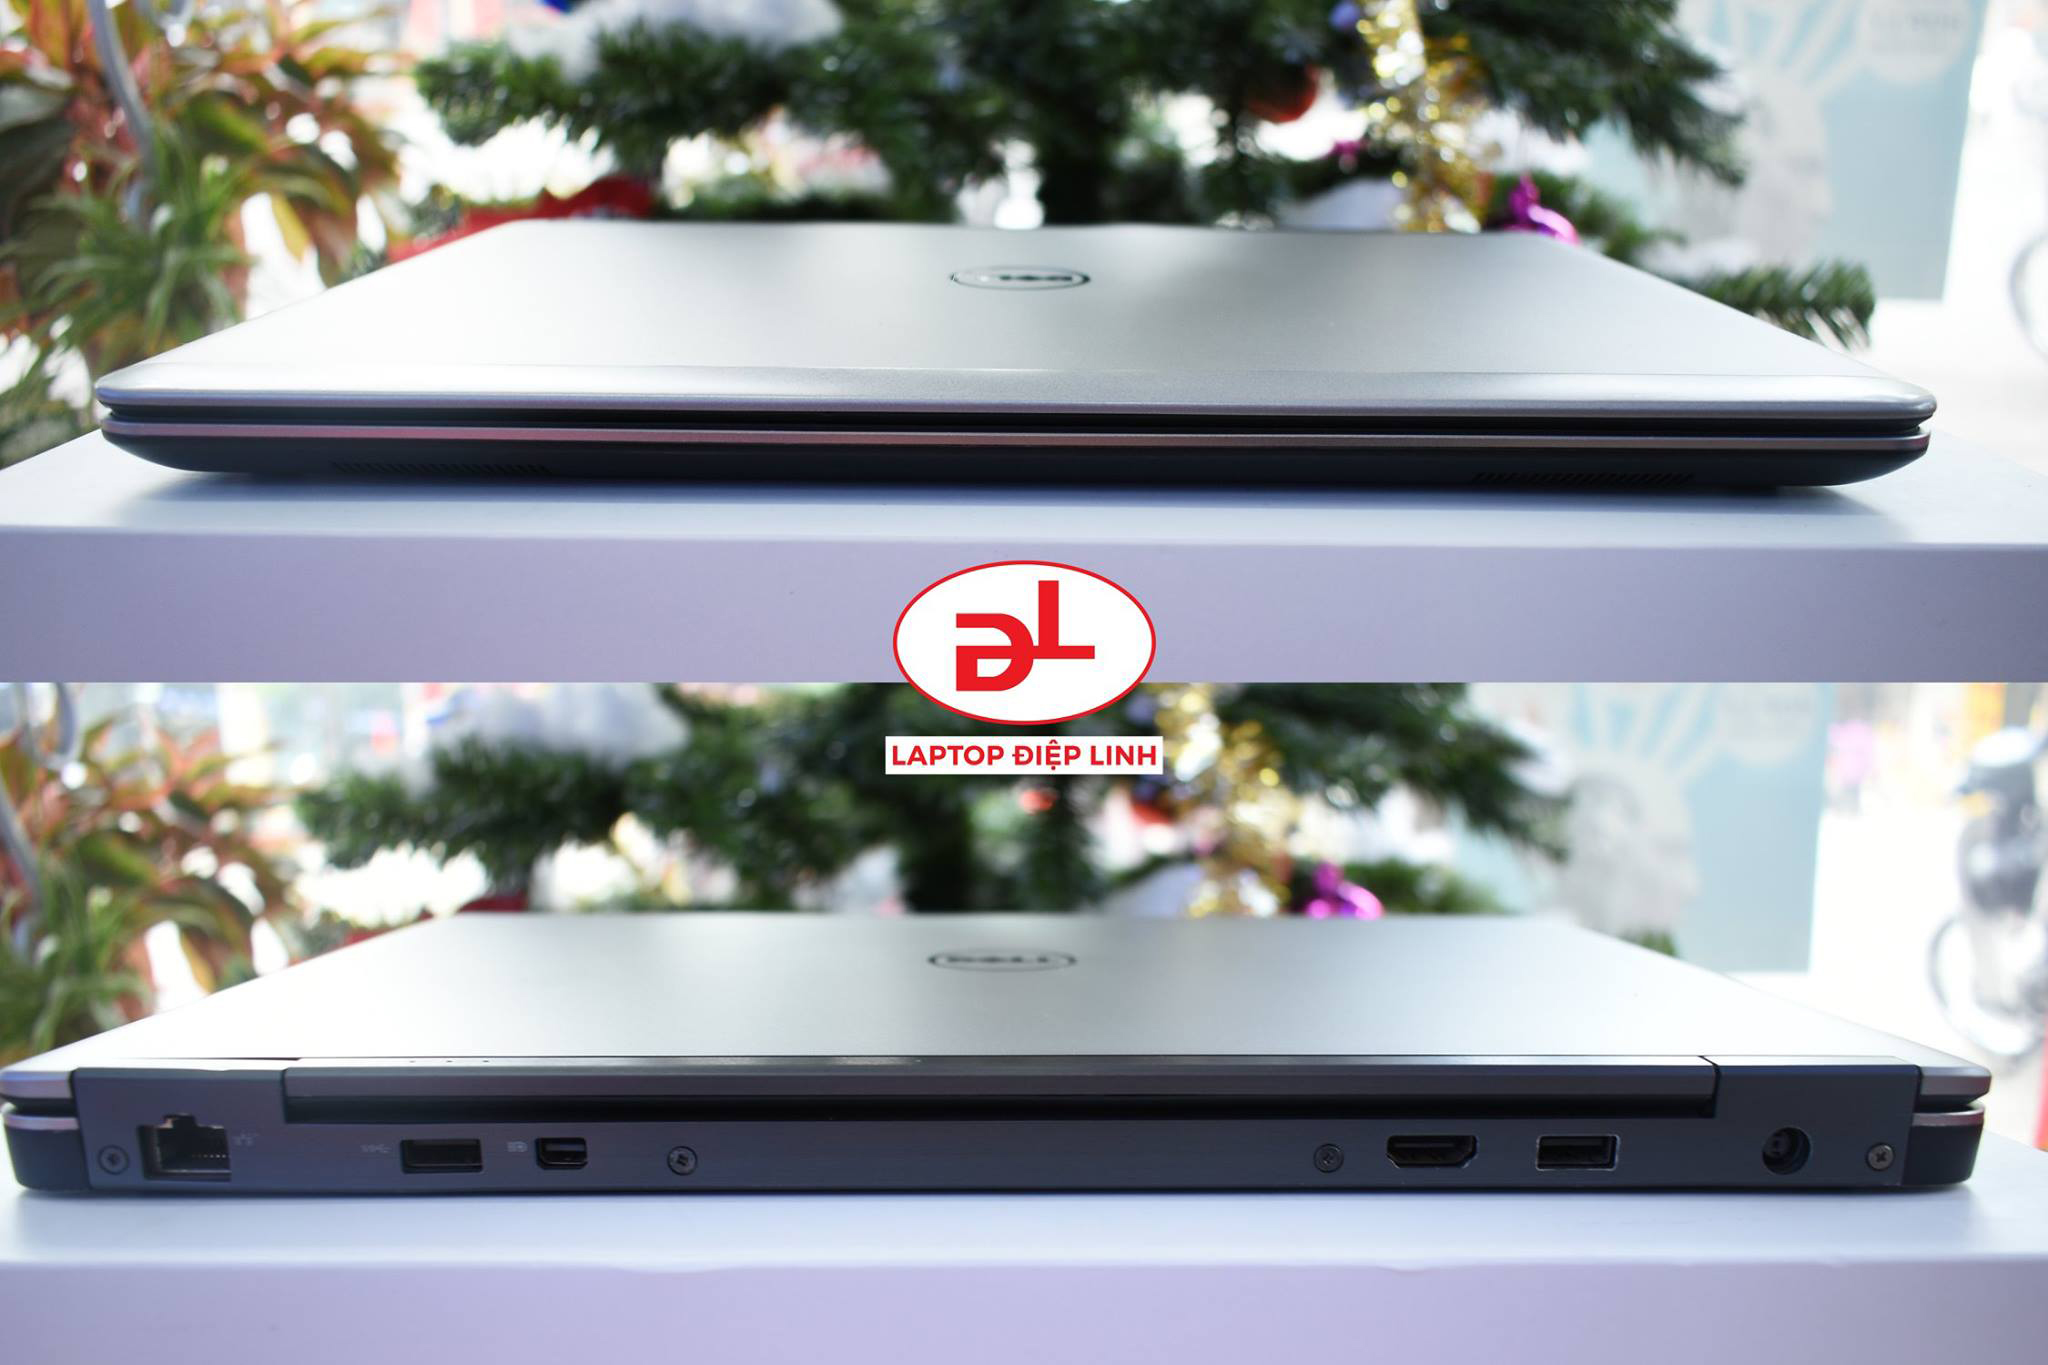 Dell Latitude E7440 | Laptop Điệp Linh | Laptop doanh nhân Hải Phòng